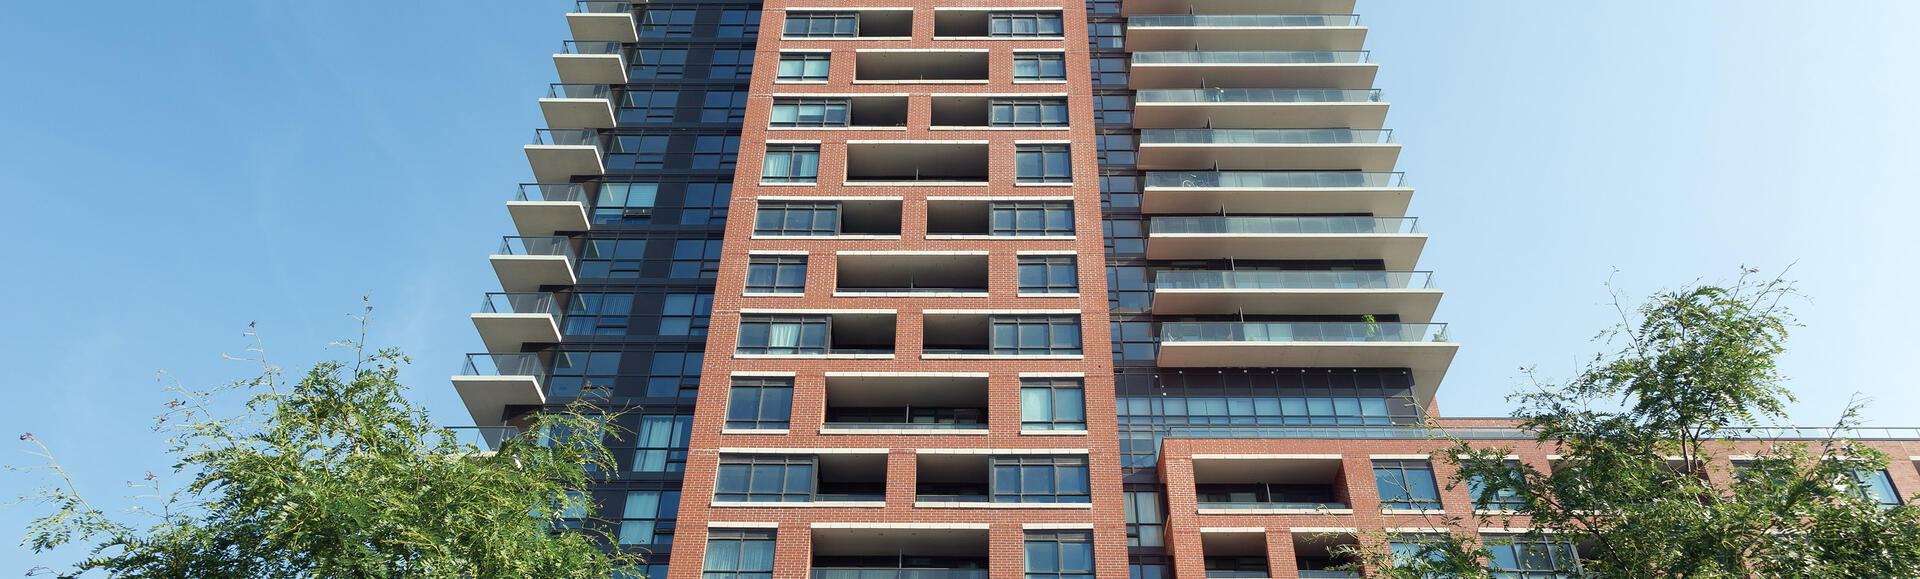 Bâtiment résidentiel utilisant les produits Finesse et de la série Architectural de Brampton Brick